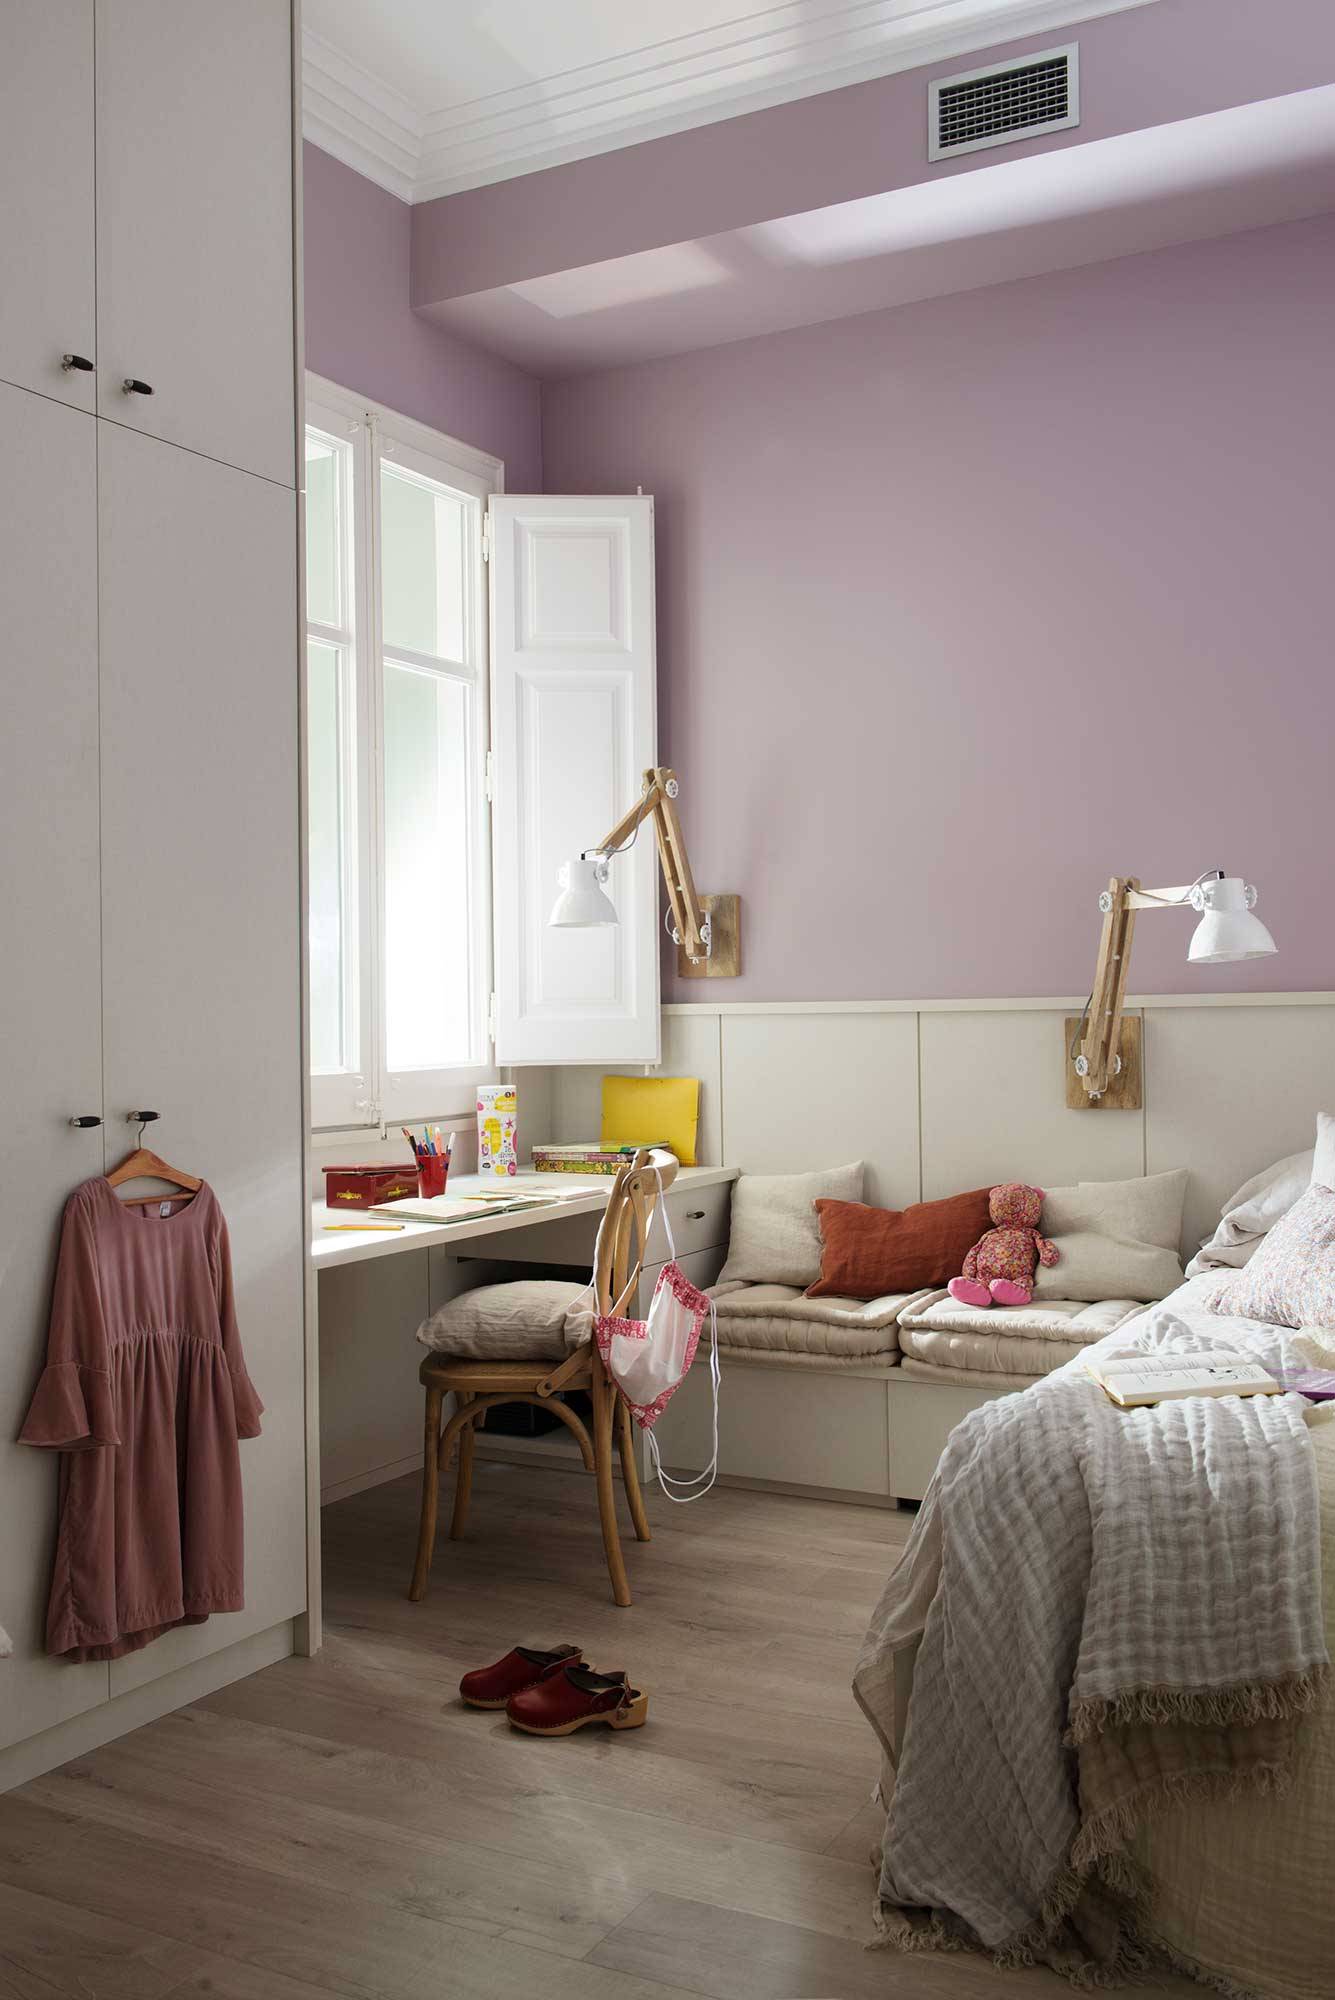 Dormitorio infantil en blanco y lila, escritorio y banco con cojines.